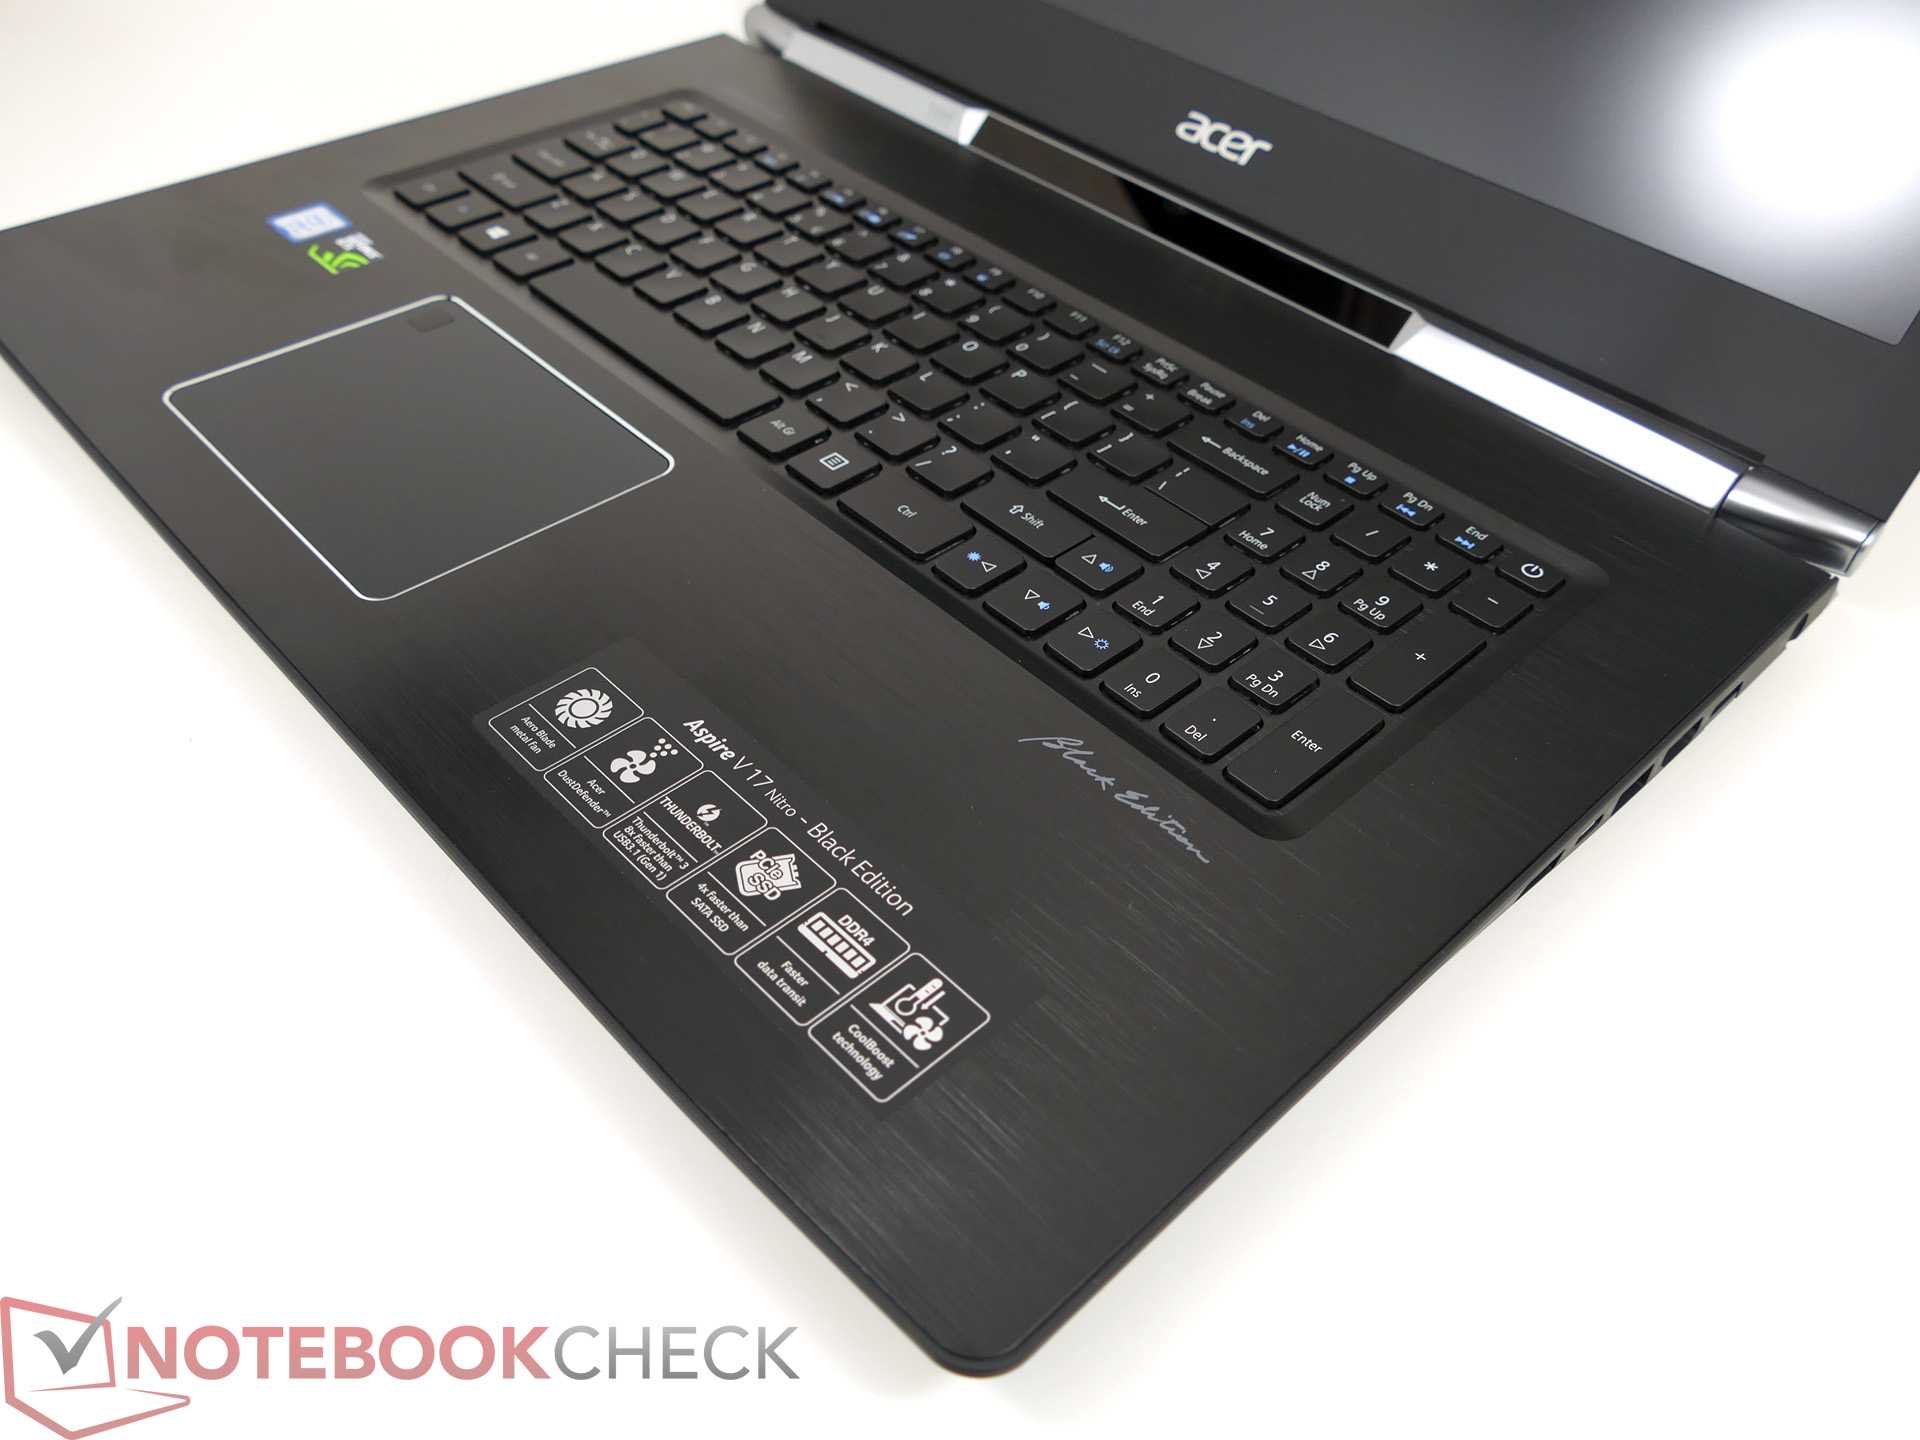 Ноутбук acer aspire vn7 791g-57re (nitro v17 black edition) — купить, цена и характеристики, отзывы